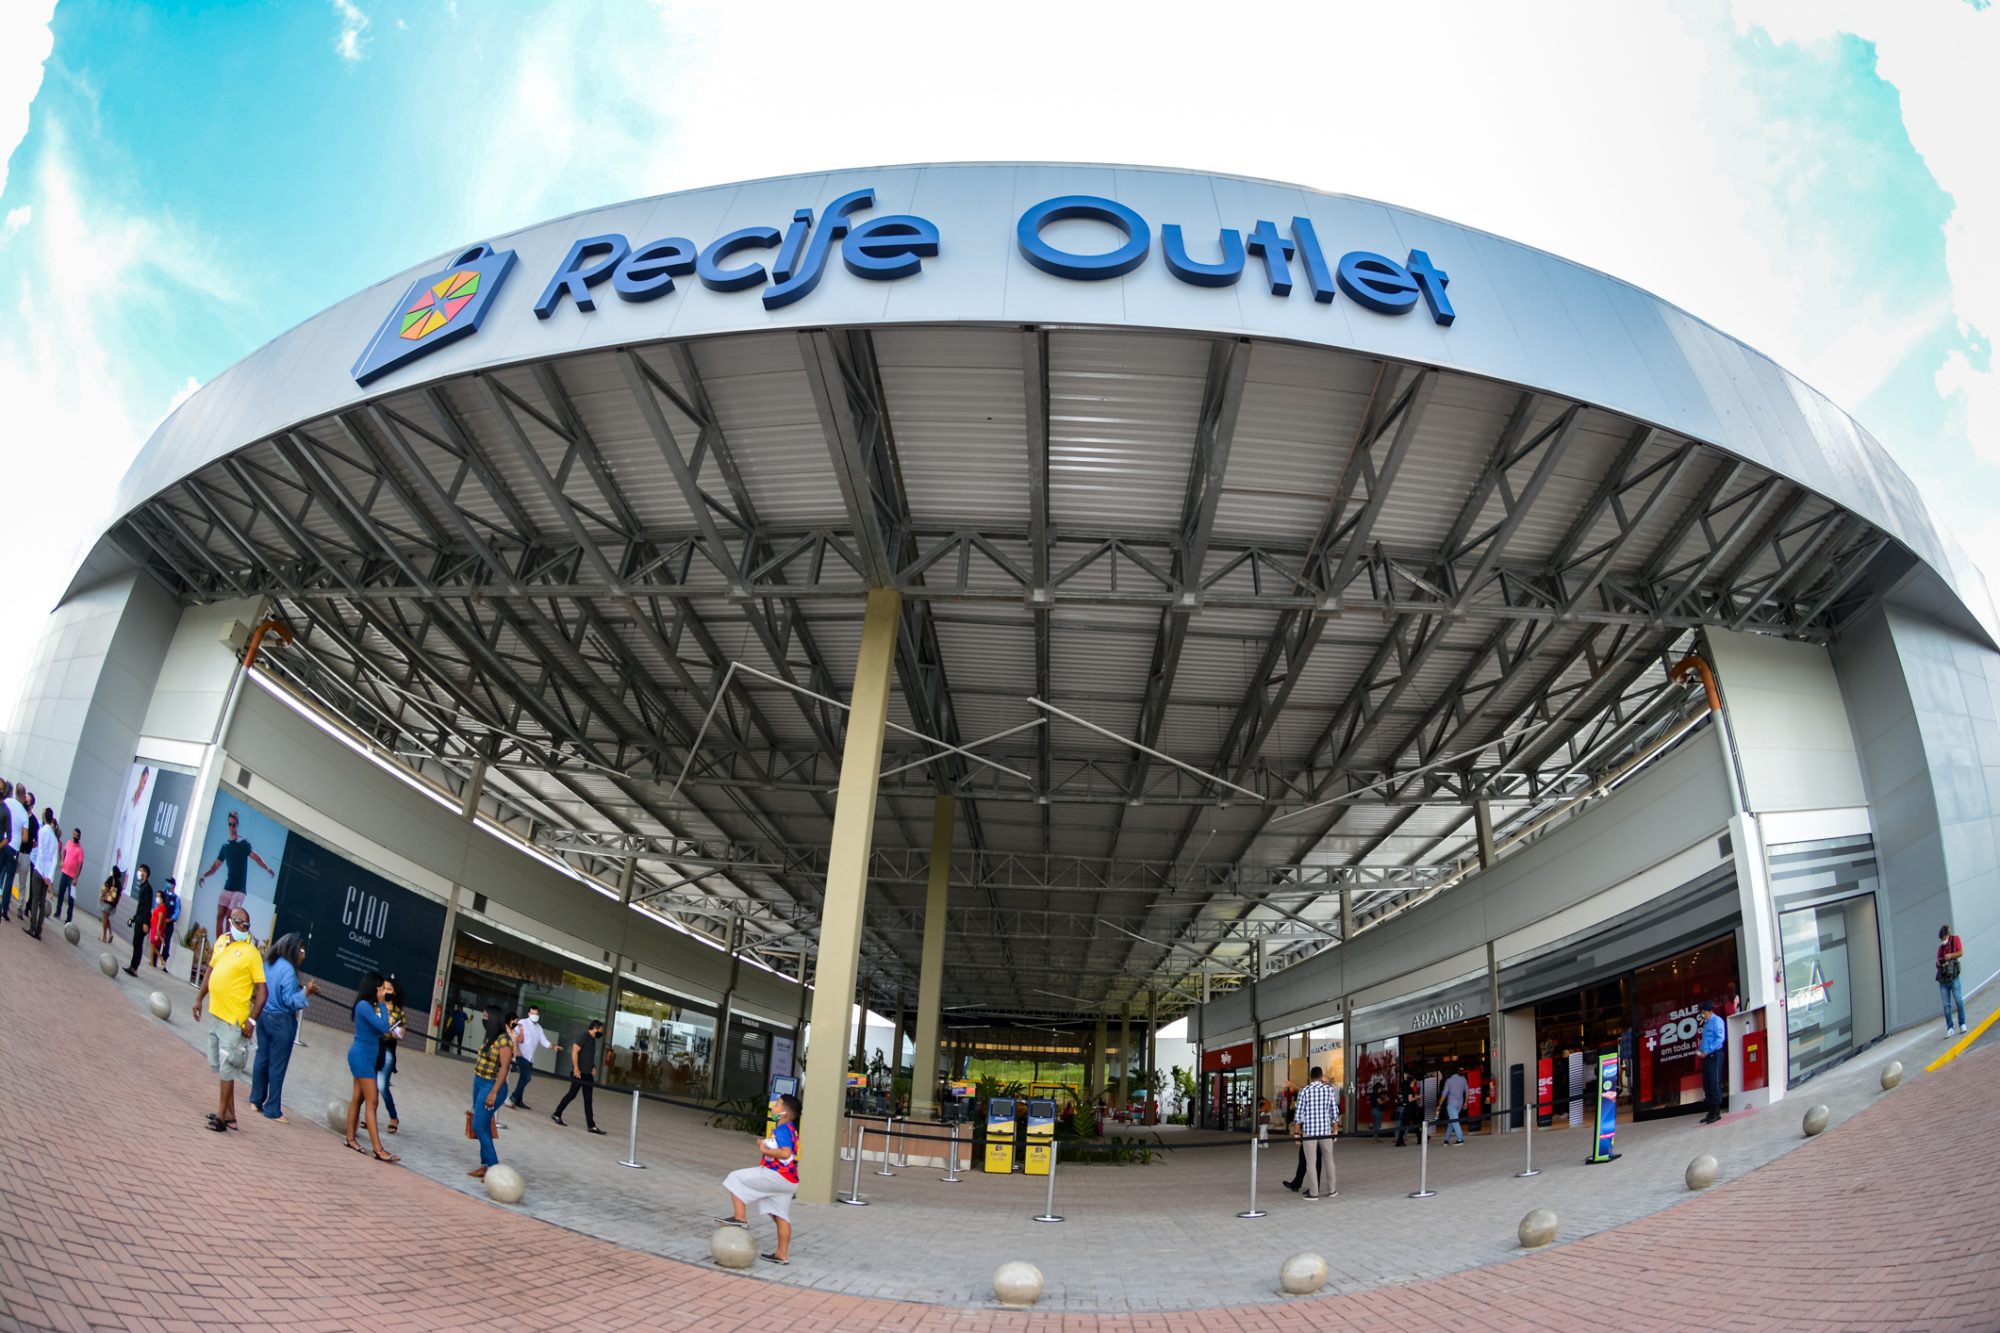 Novas lojas irão aportar no Recife Outlet